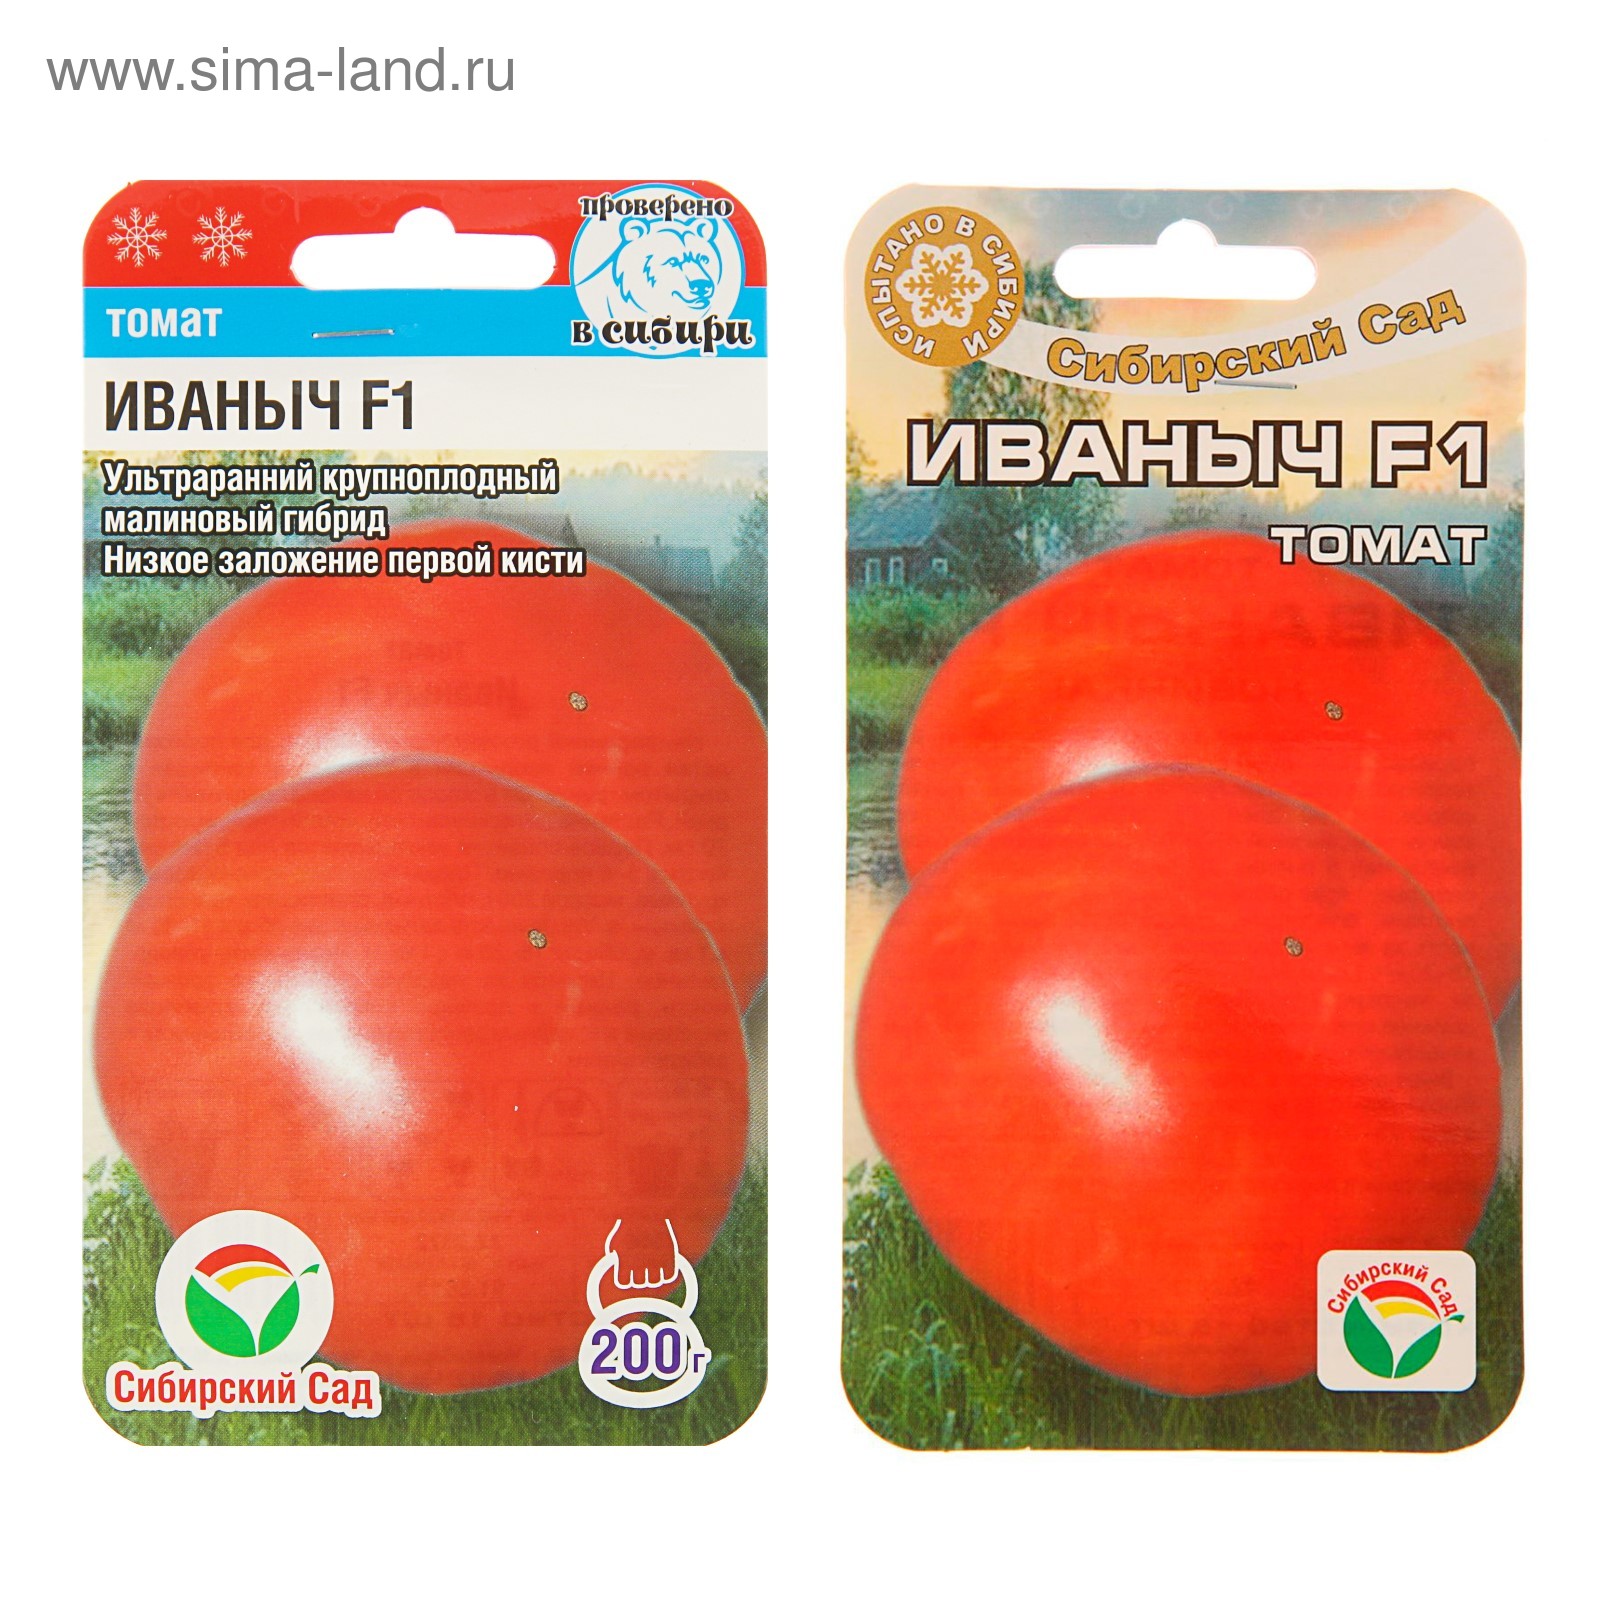 Томат иваныч f1: описание гибрида, фото помидоров и кустов, отзывы начинающих и опытных огородников